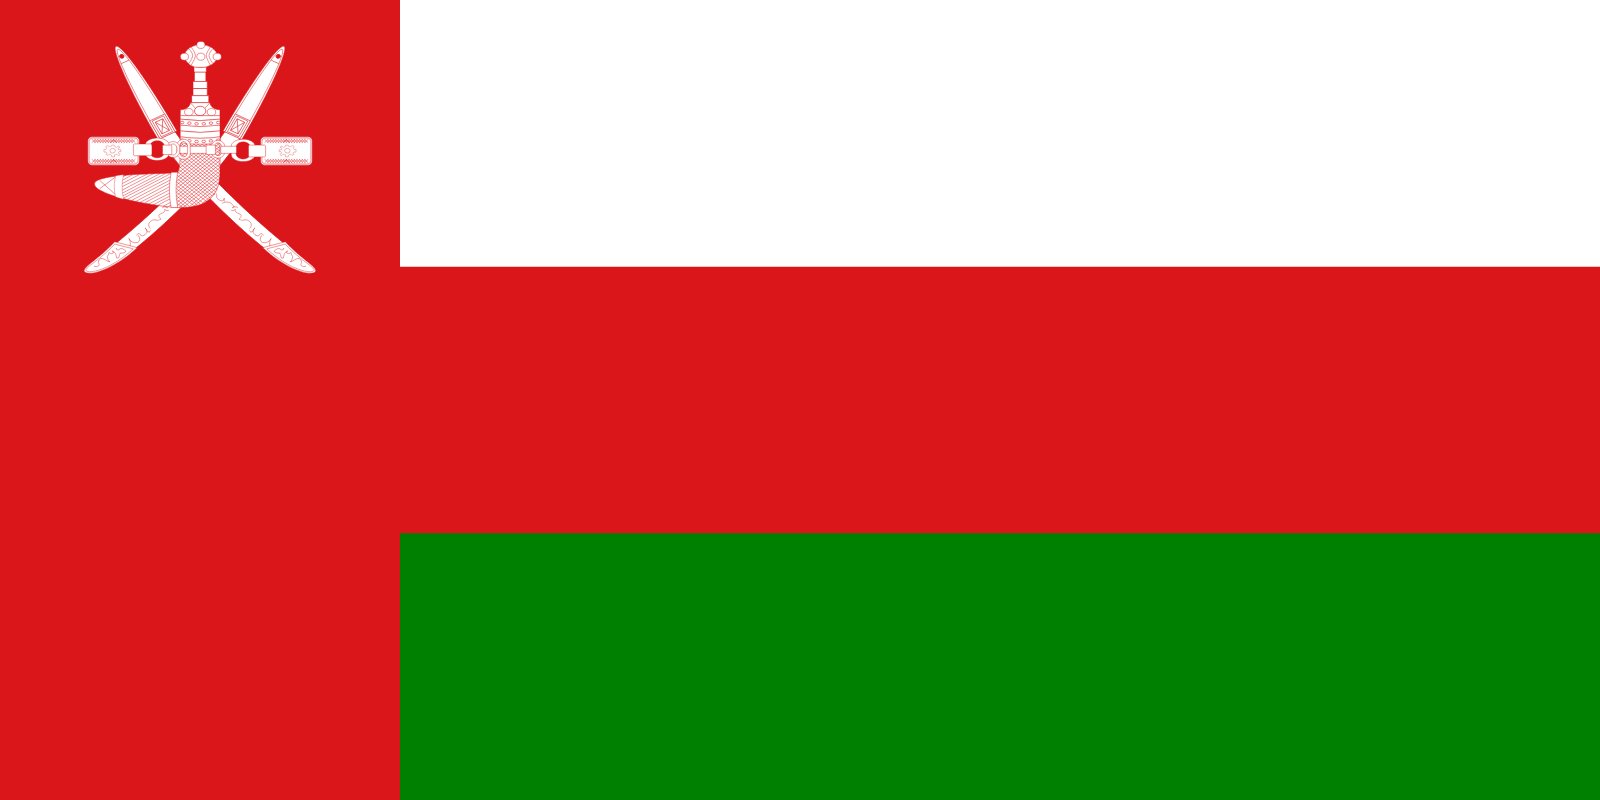 Sultanato de Omã